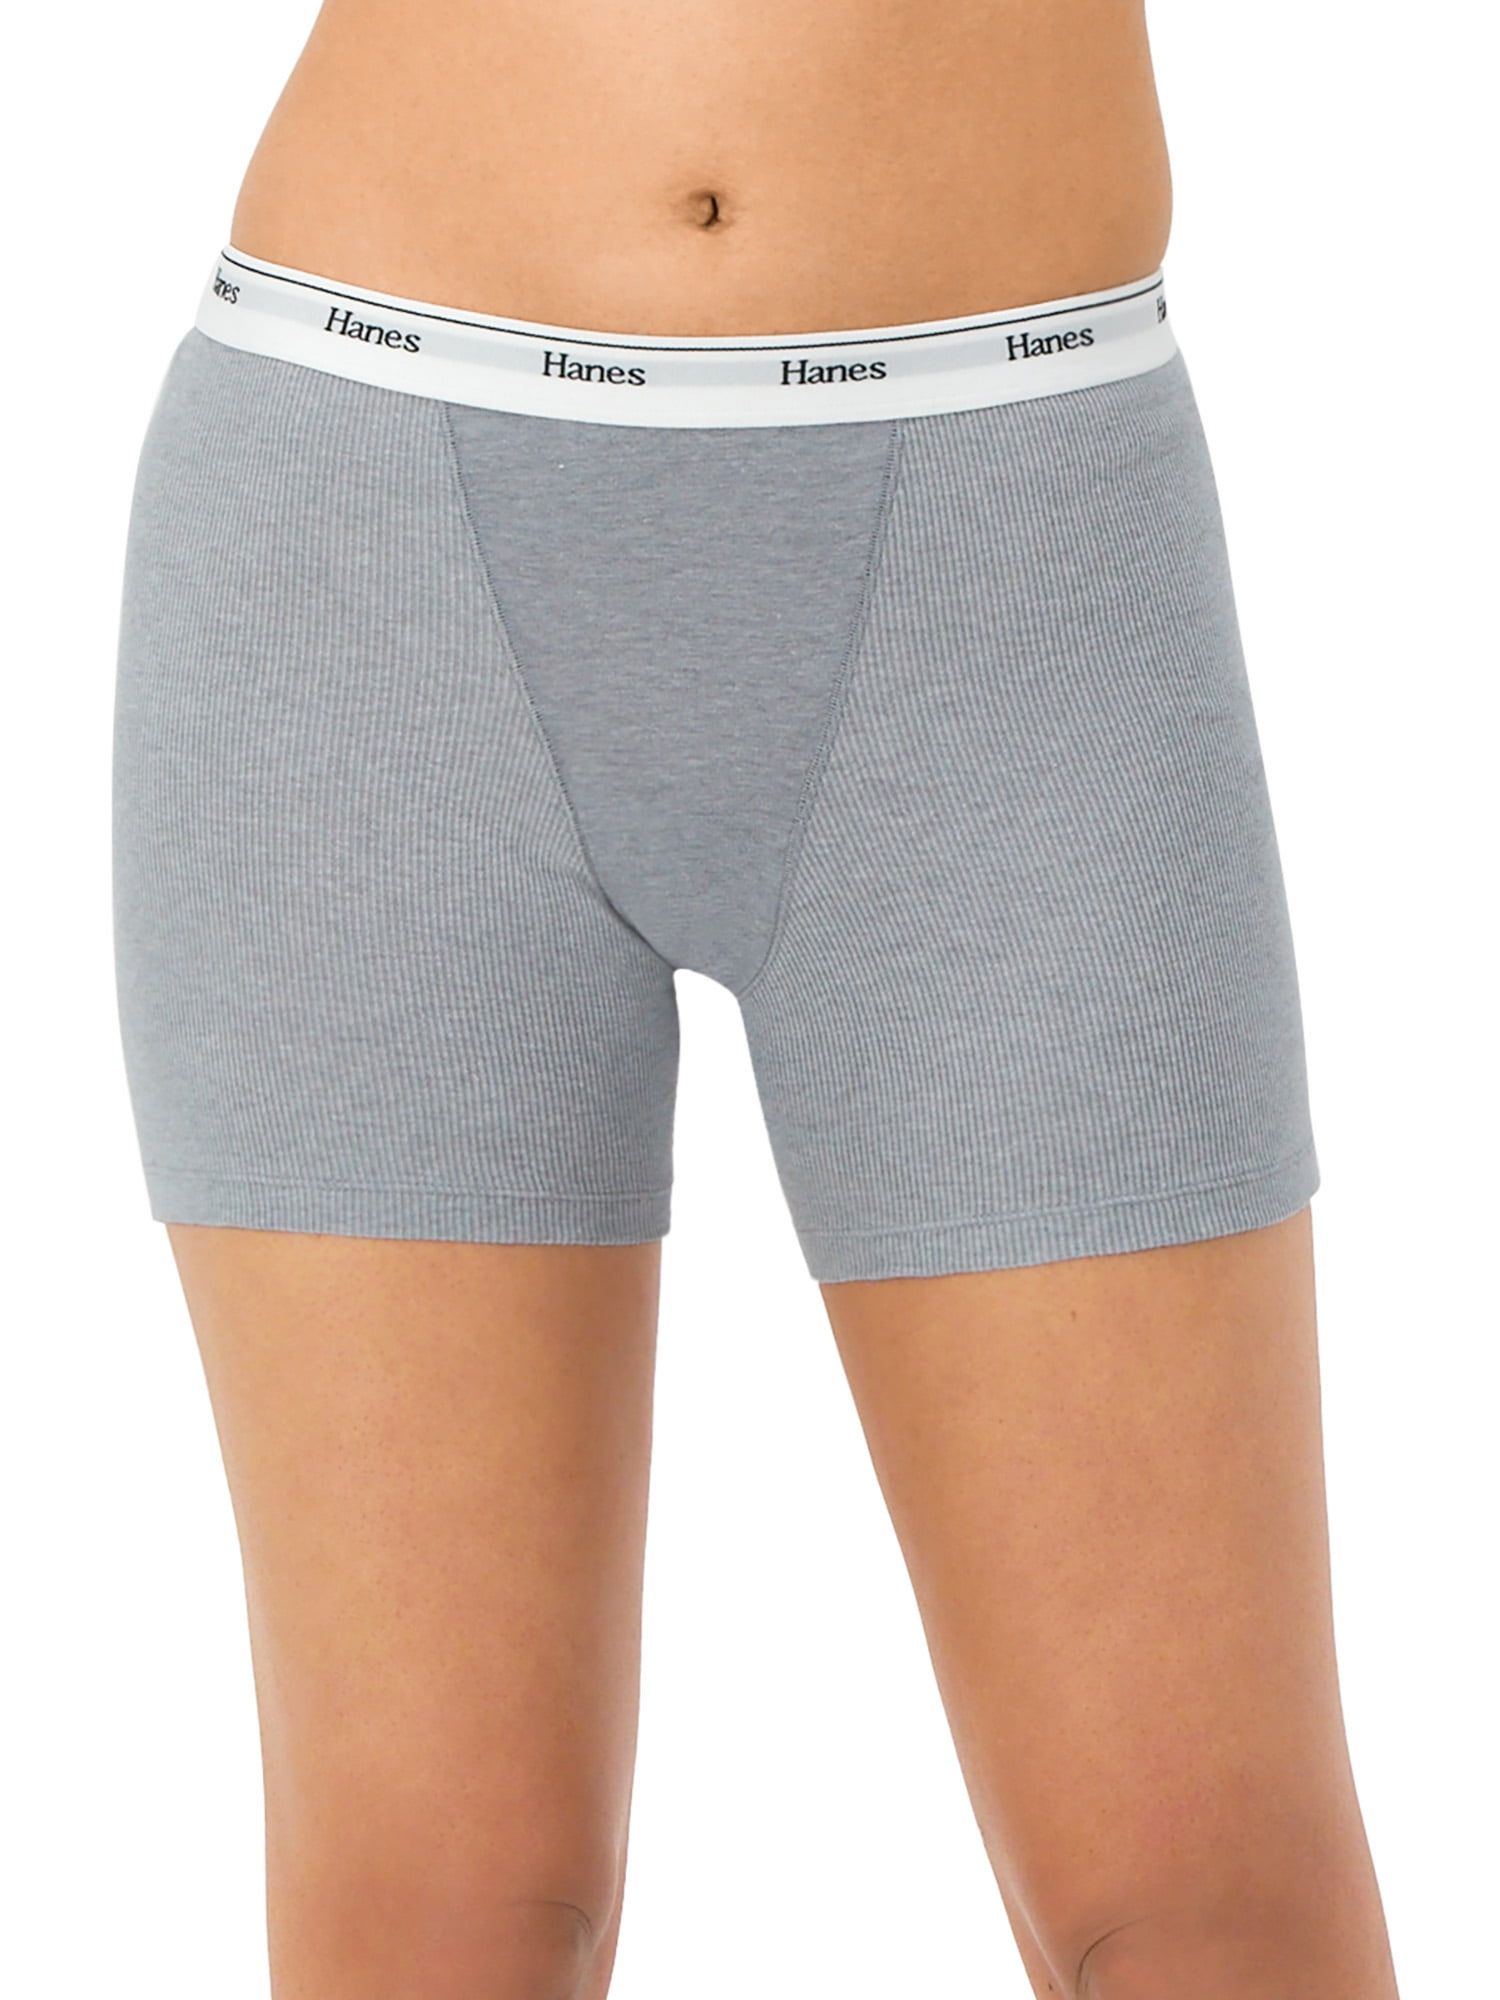 Hanes Originals Ultimate Women's Cotton Stretch Boxer Brief Underwear - 3  Pack - Gray, S - Fred Meyer